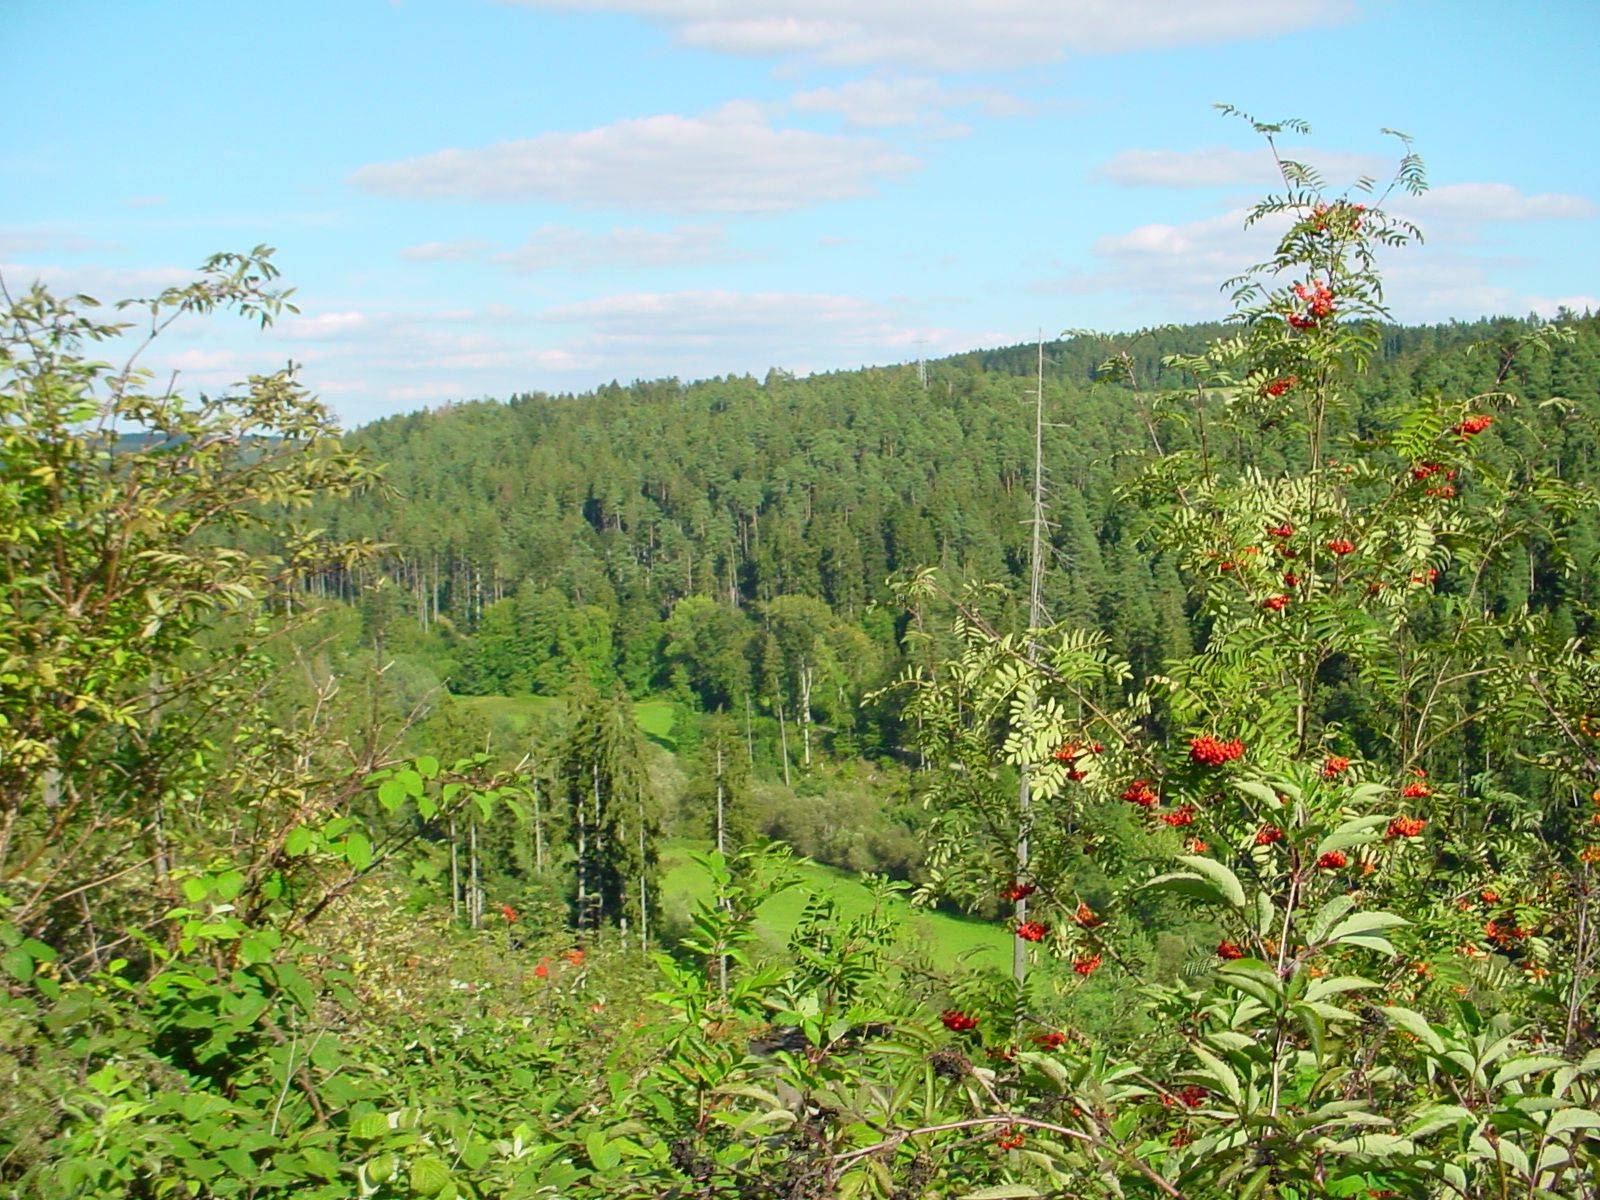                                                     Landschaft Waldachtal                                    